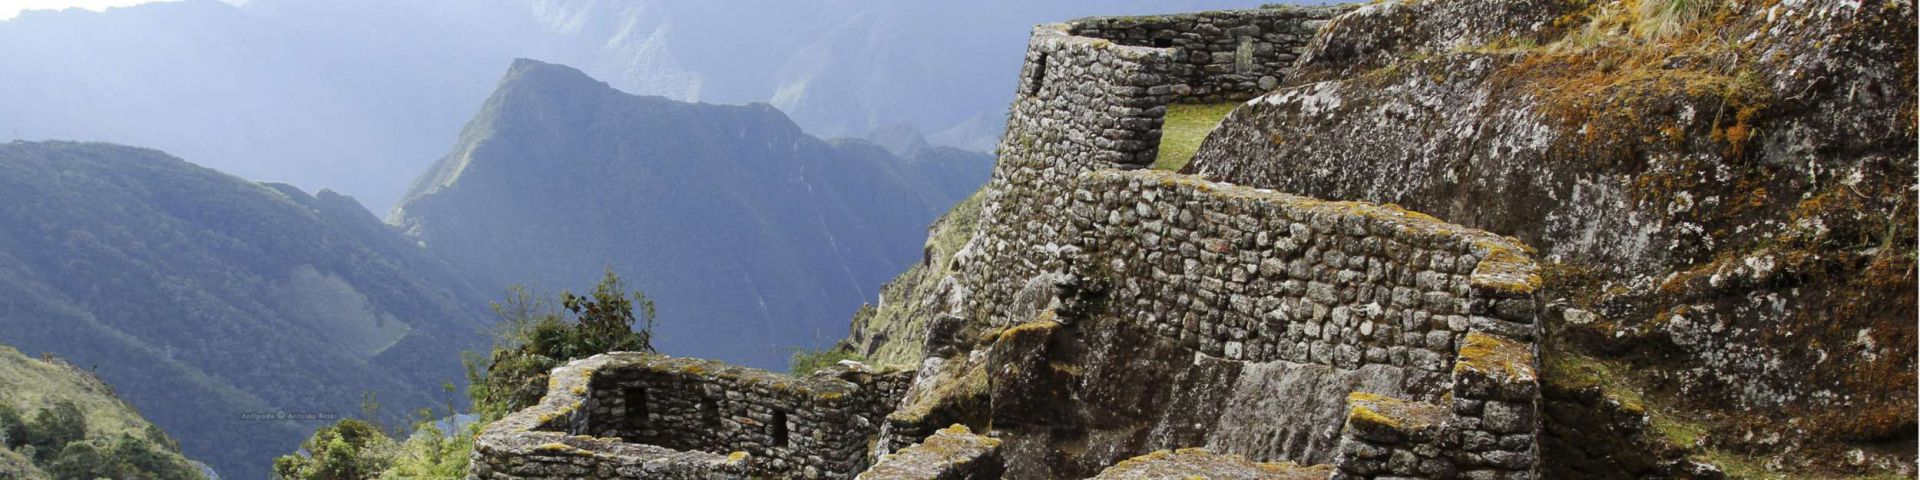 Camino Inca | MachuPicchu